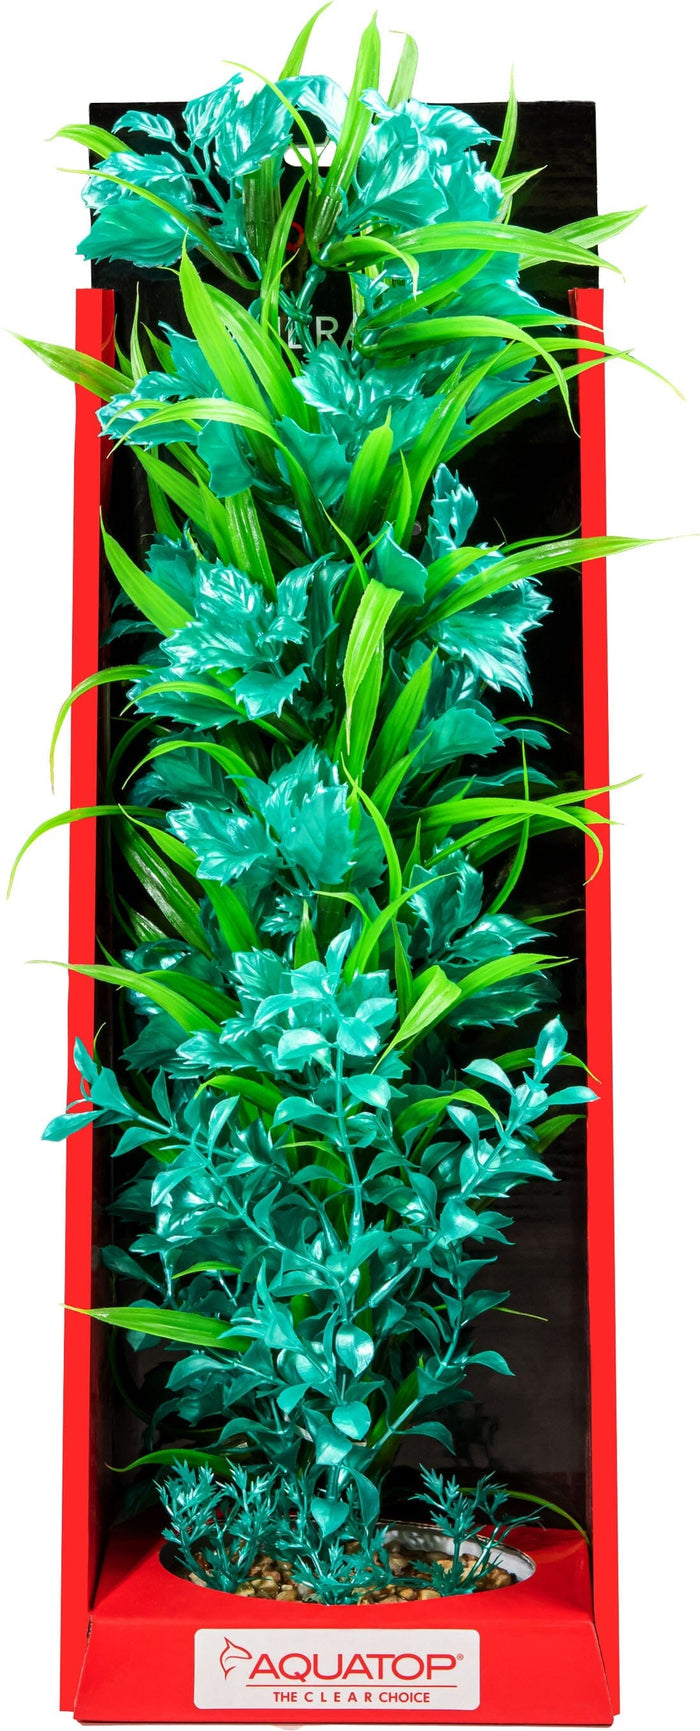 Aquatop Vibrant Passion Plant Boxed Plastic Aquarium Plant - Turquoise - 16